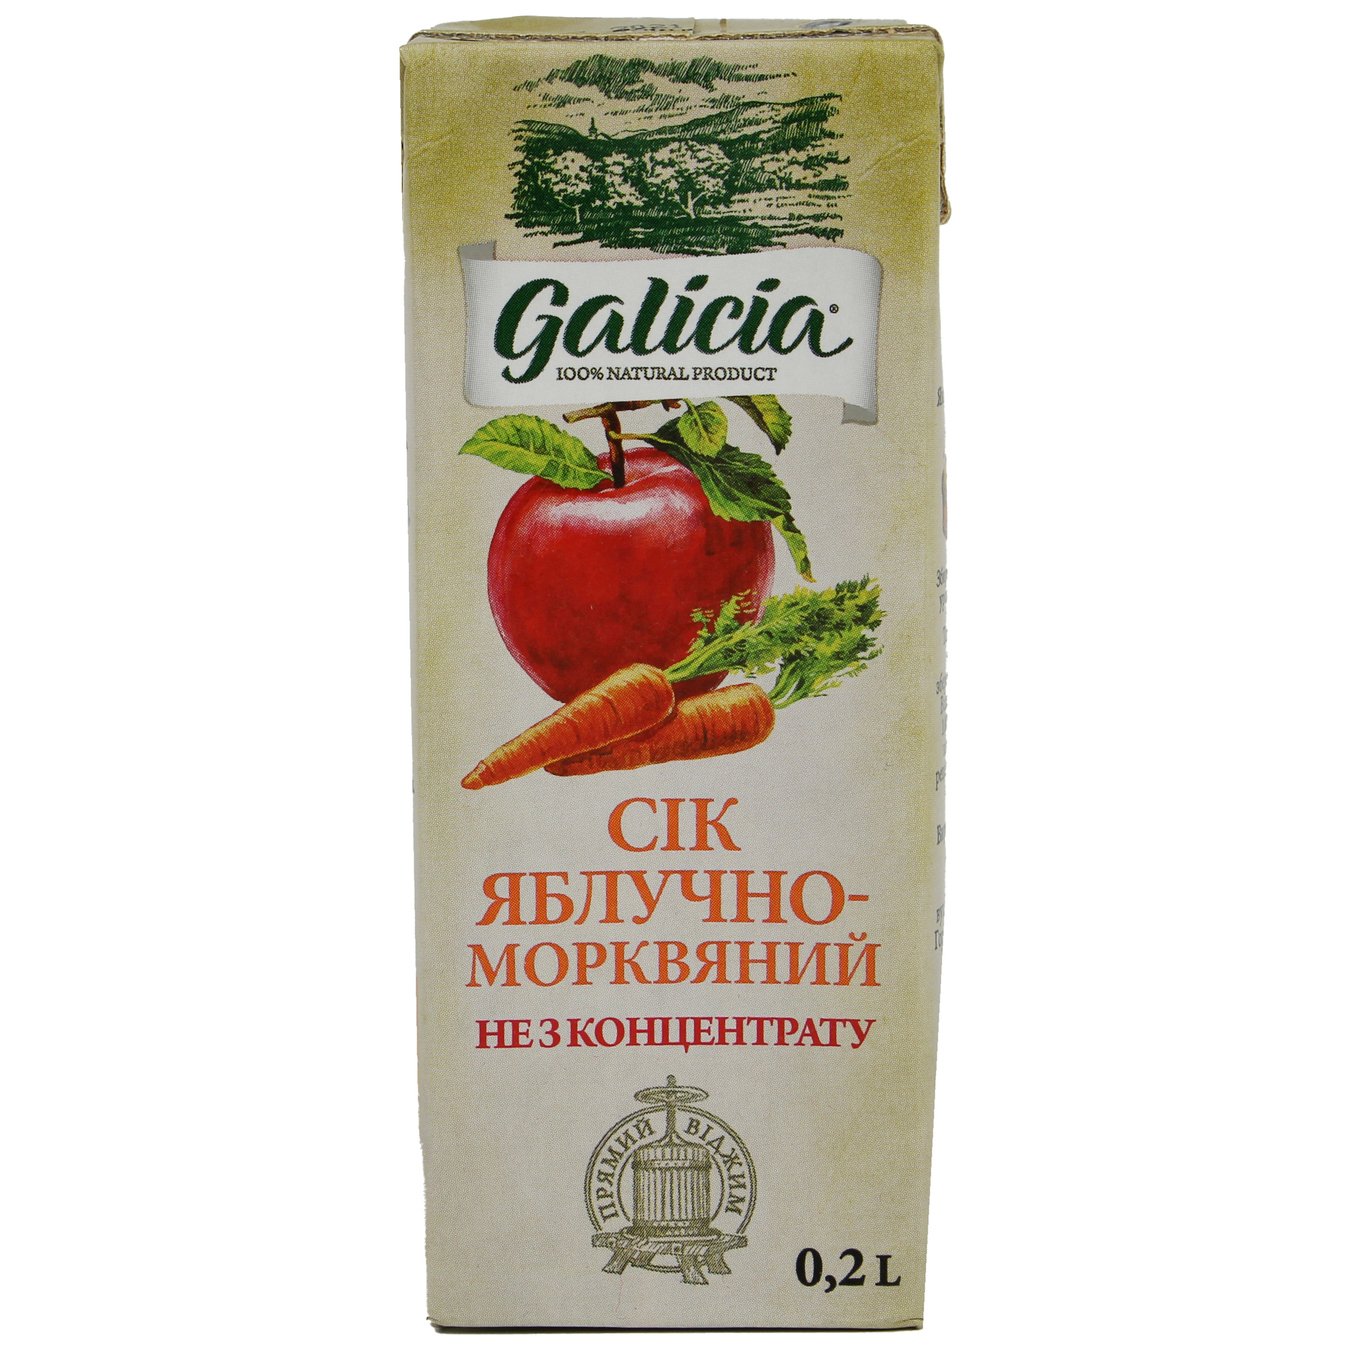 Сік Galicia Яблучно-морквяний з м’якоттю 0,2л